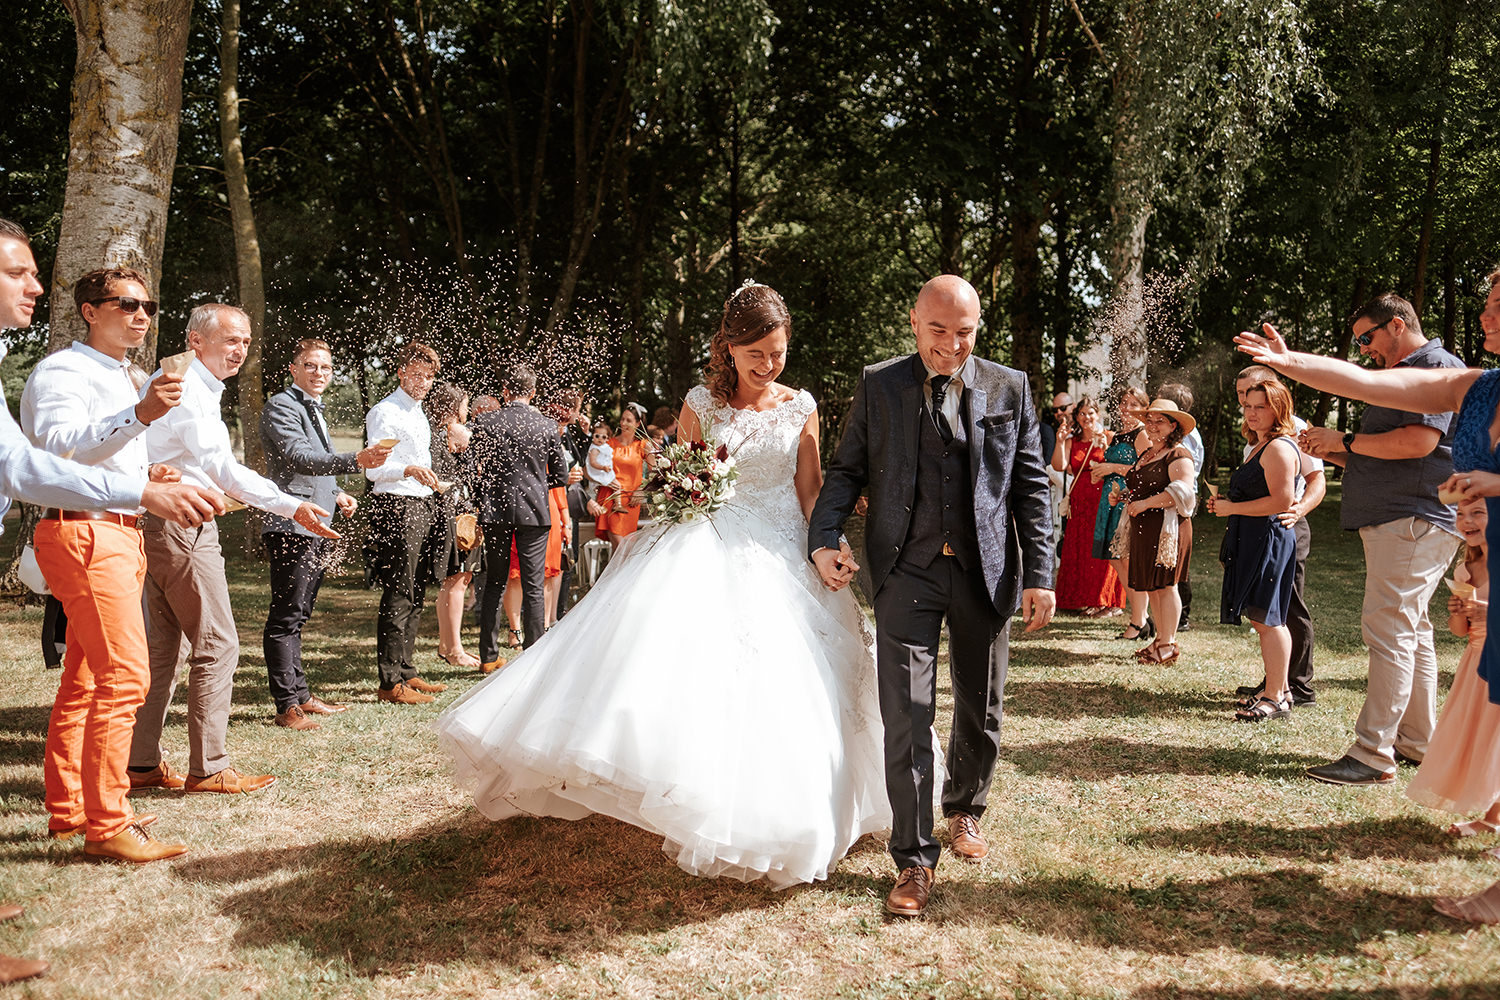 Frankie Bastide - Photographe documentaire de mariage dans les Yvelines